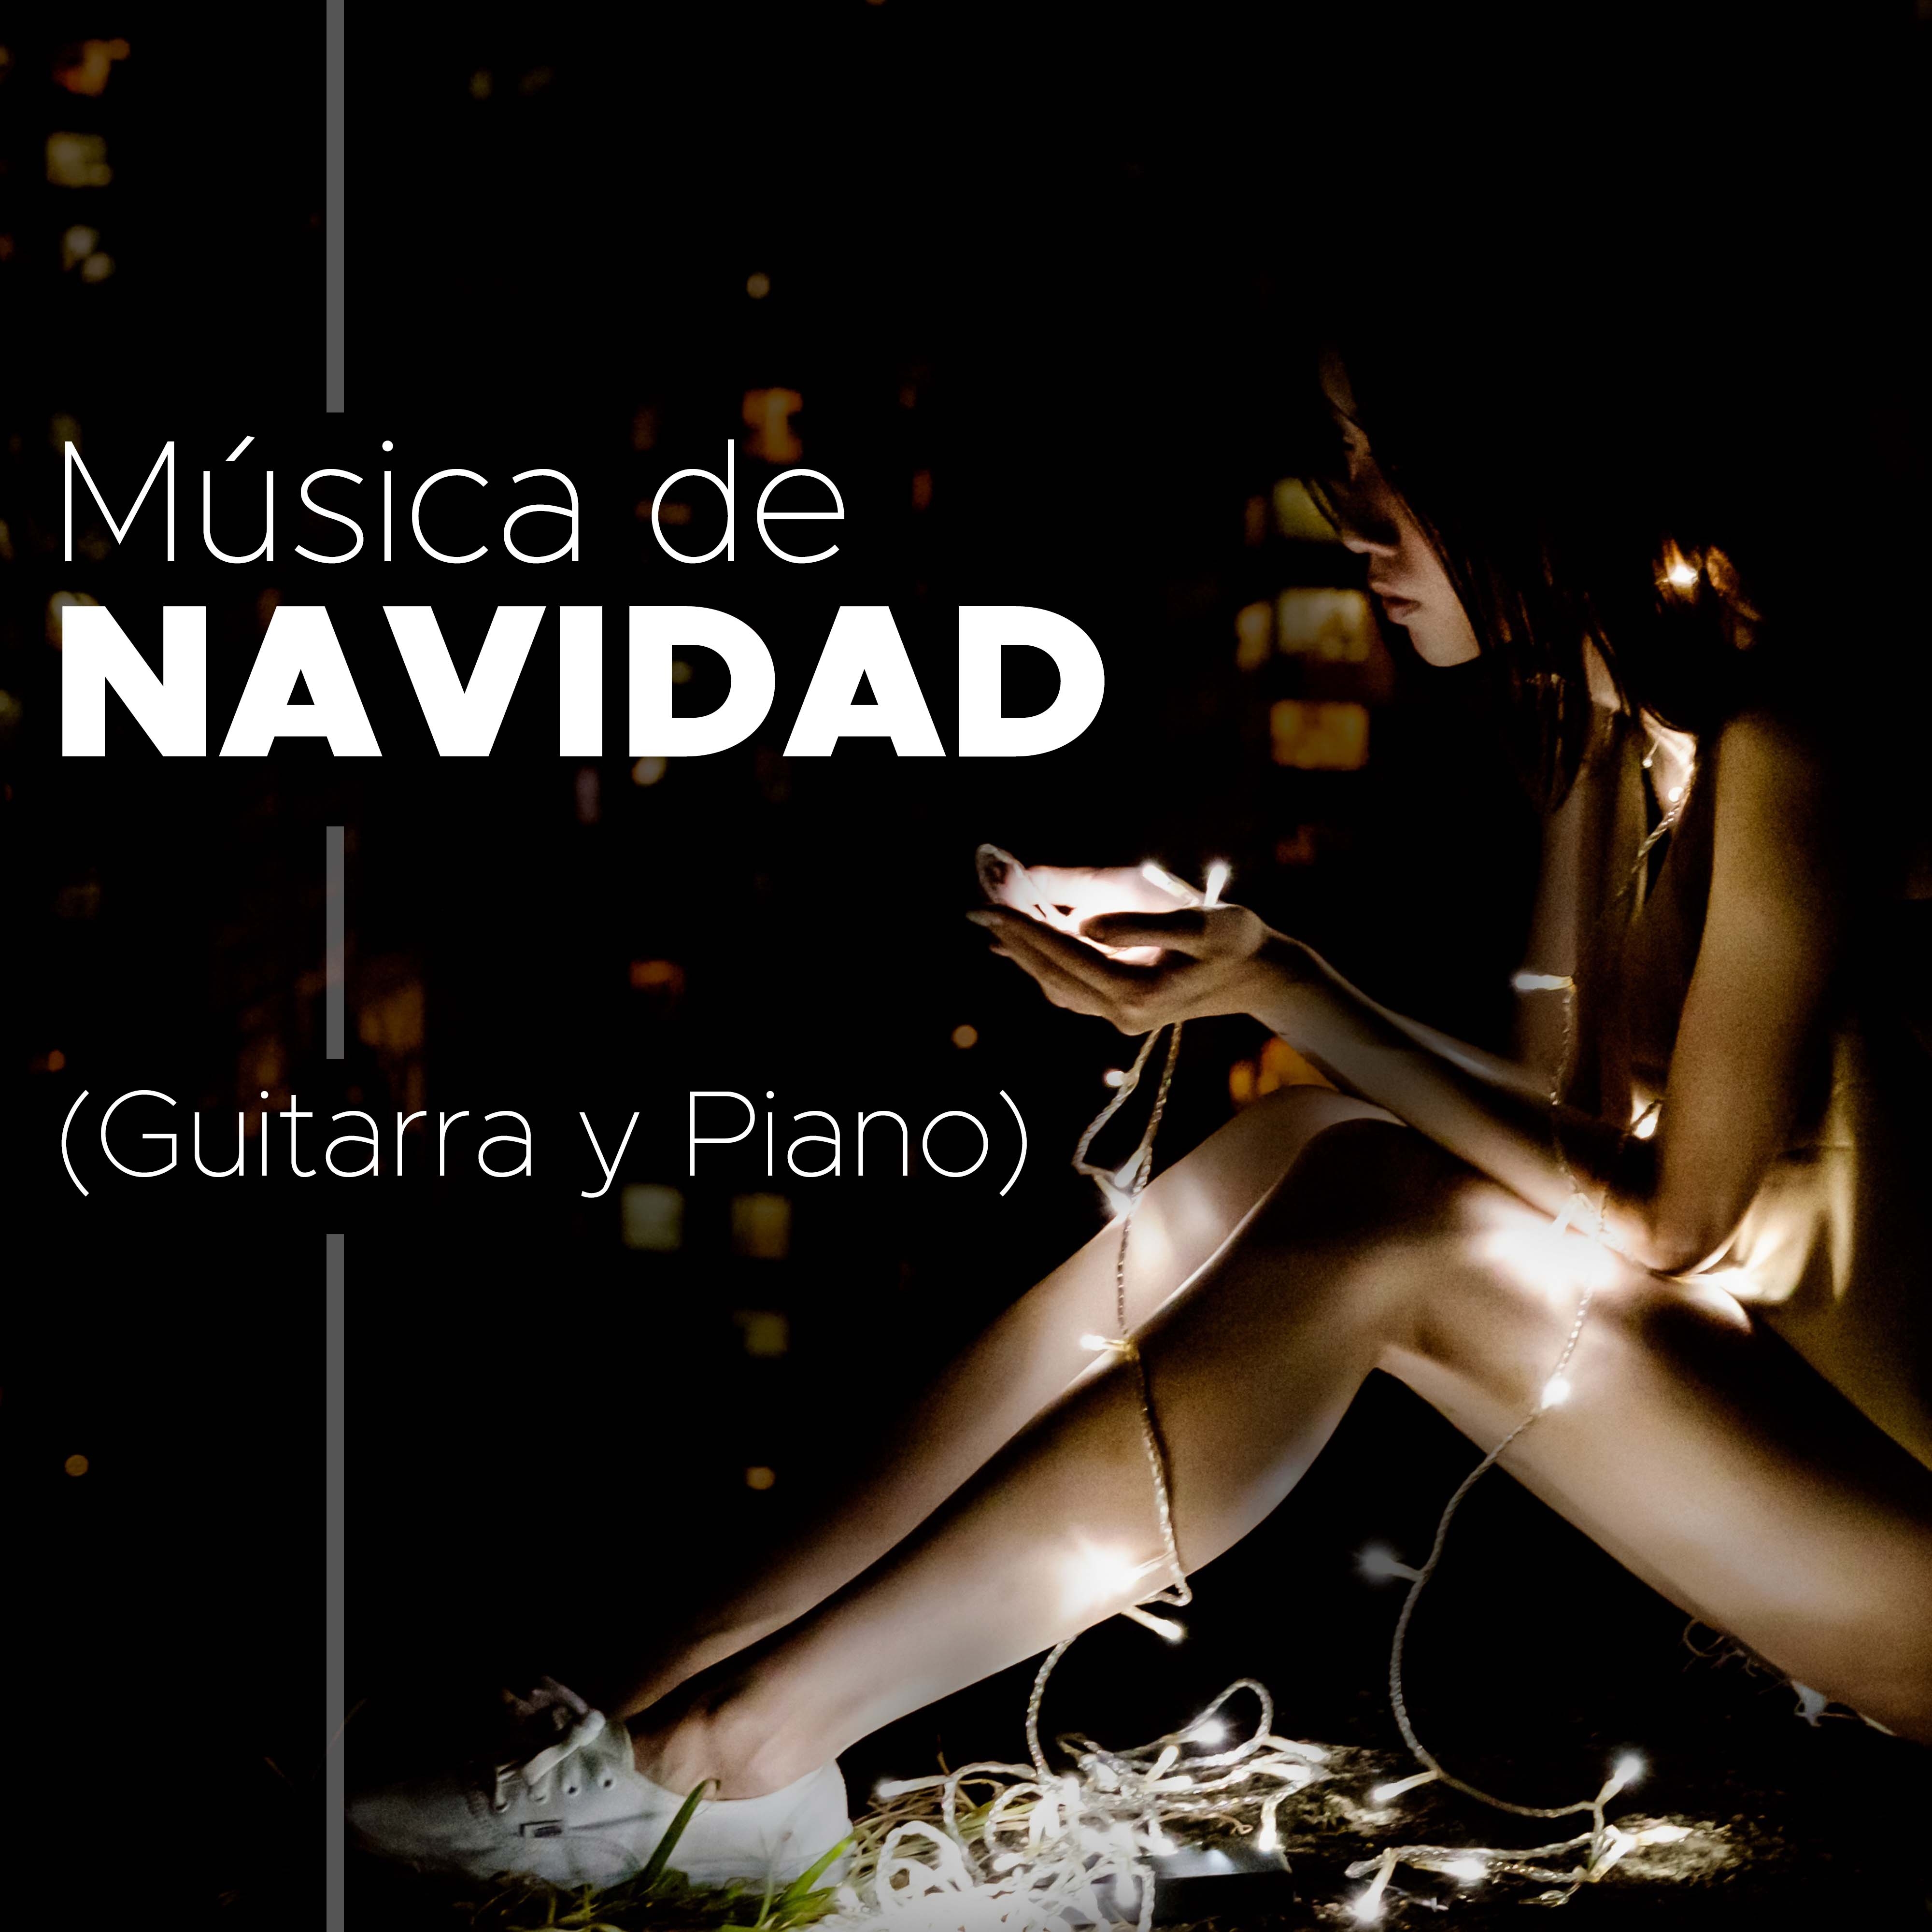 Musica de Navidad - Musica Romantica de Navidad para Calentar sus Vacaciones (Guitarra y Piano)